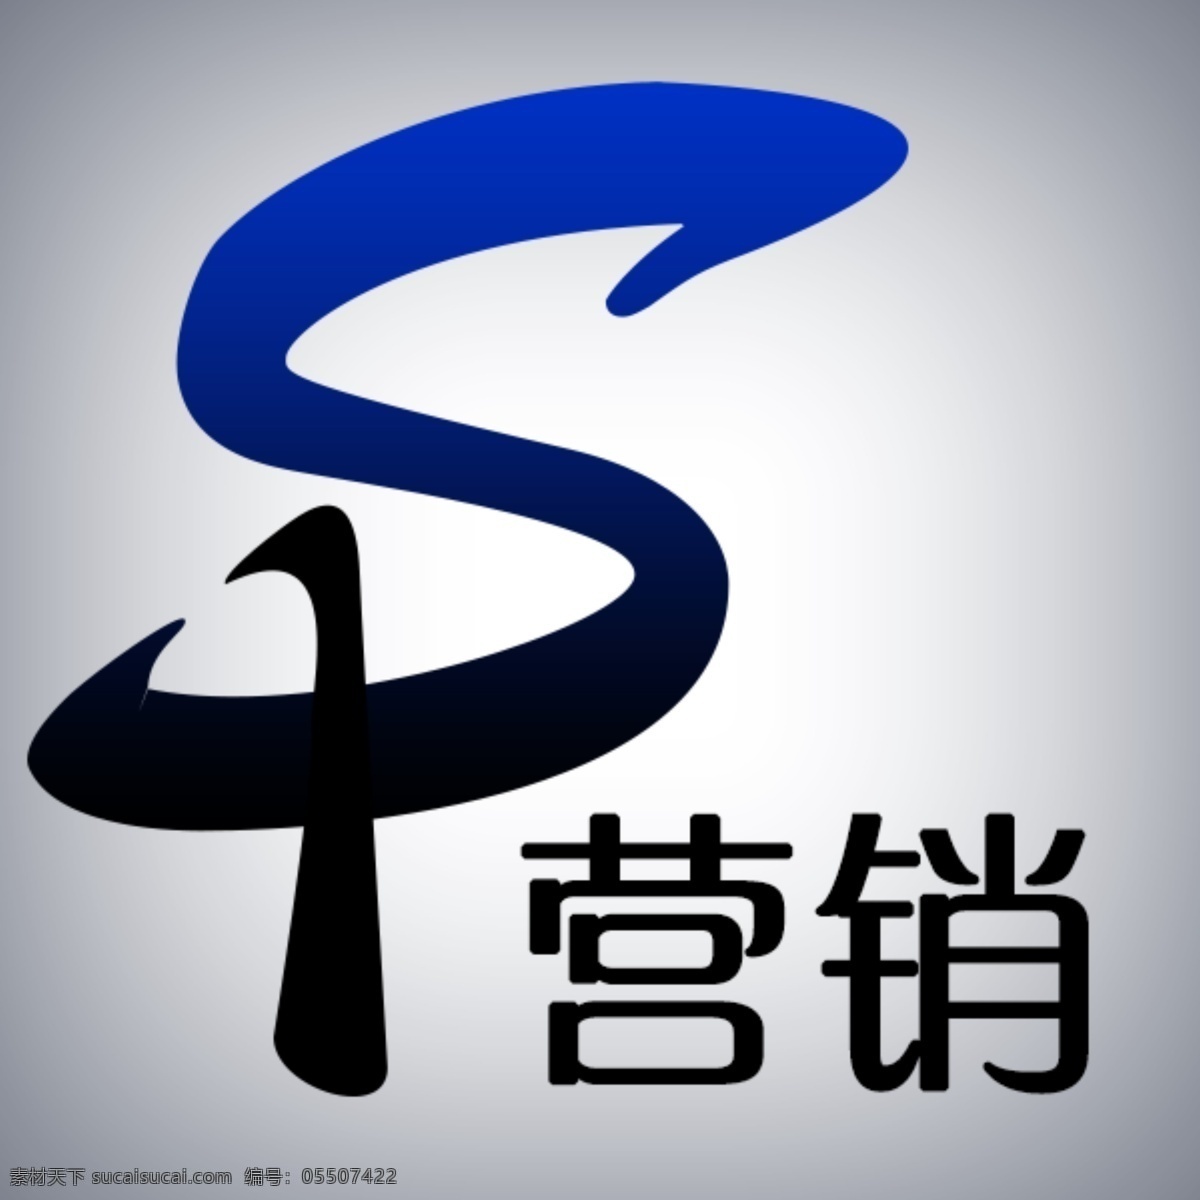 sp 美的 营销 门户 logo sp字母设计 营销logo 白色